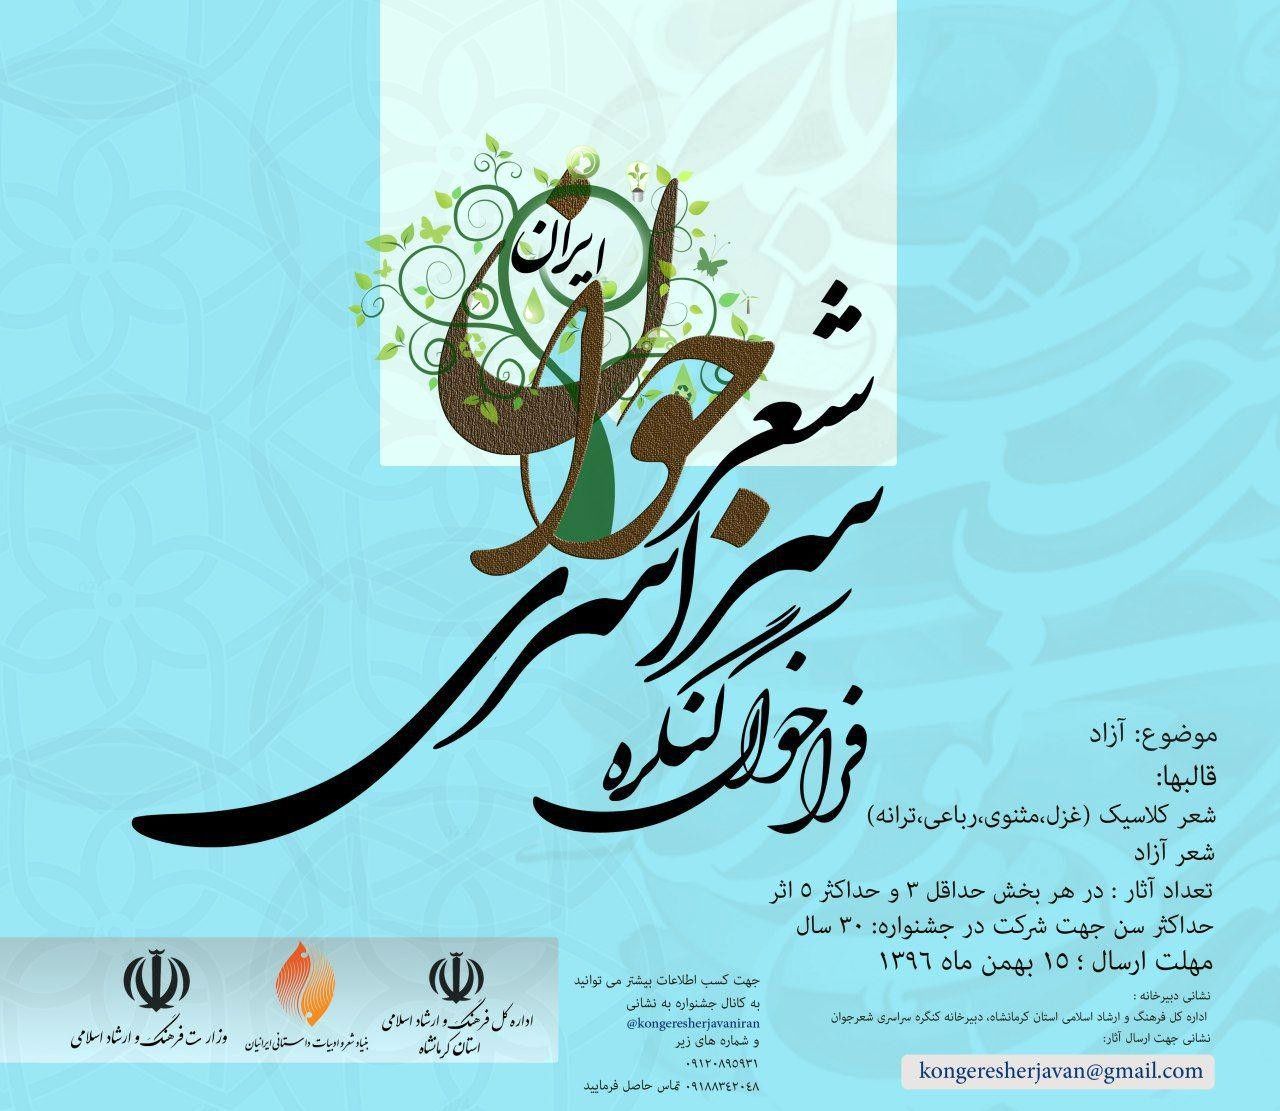 برگزاری اولین کنگره سراسری شعر جوان ایران در کرمانشاه